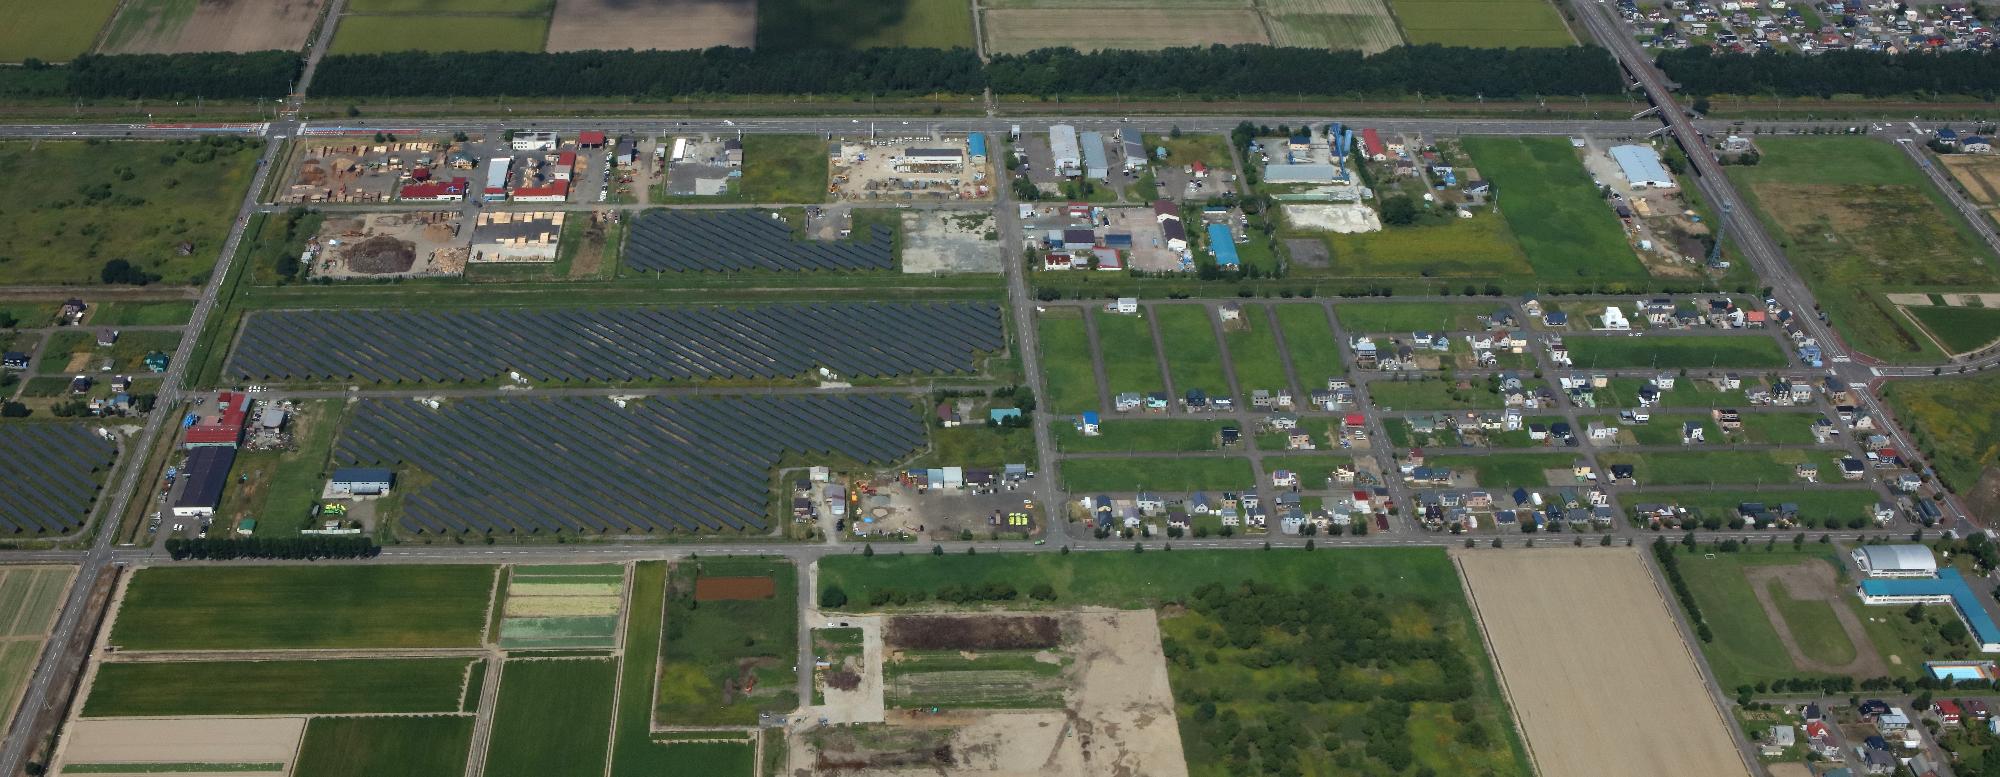 上空から撮影した上幌向工業団地の写真